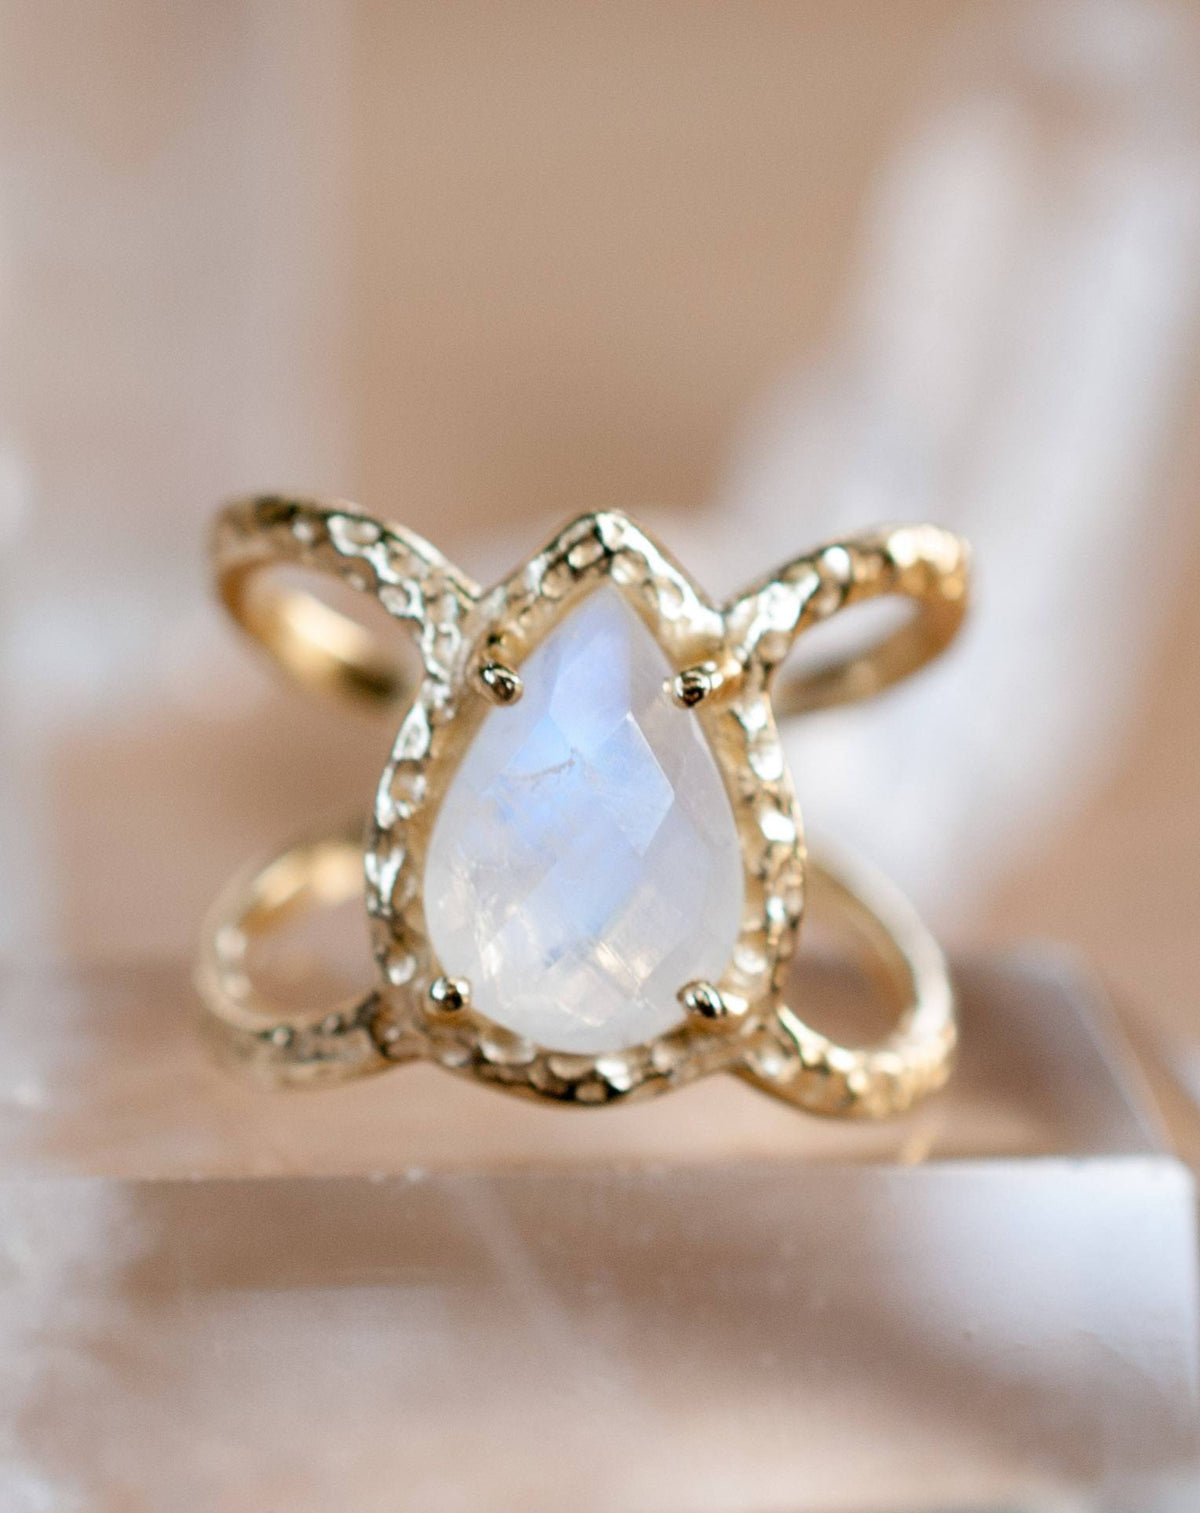 Moonstone Ring * Hammered Band * Gold Ring * Statement Ring * Gemstone Ring * Pink * Wedding Ring * Organic Ring * Natural* BJR137